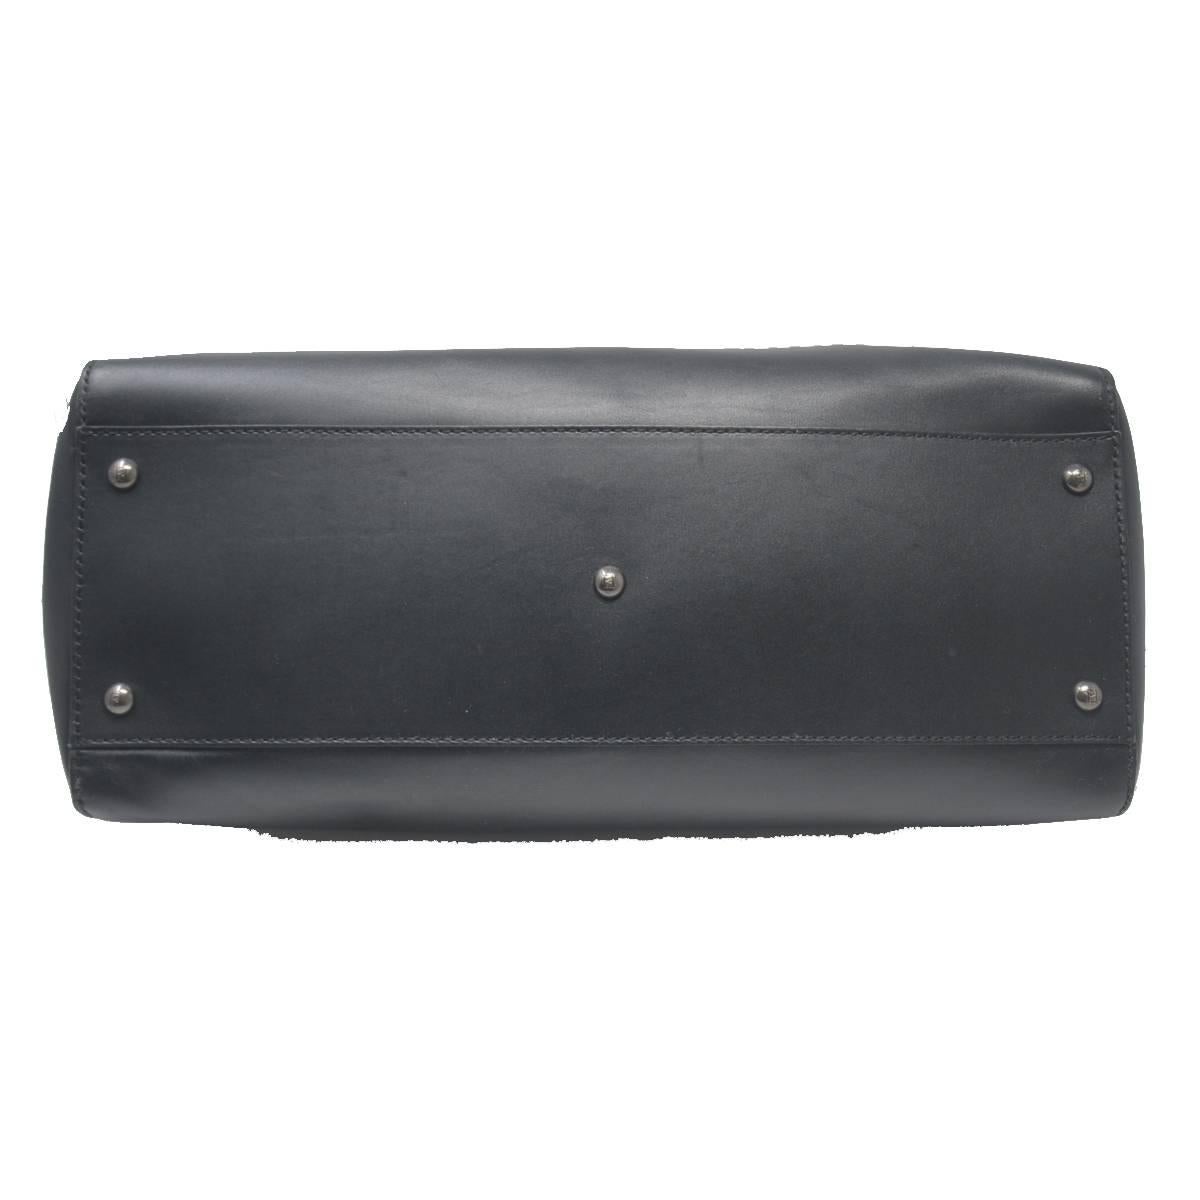 Fendi Large Peekaboo Black leather Handbag 1